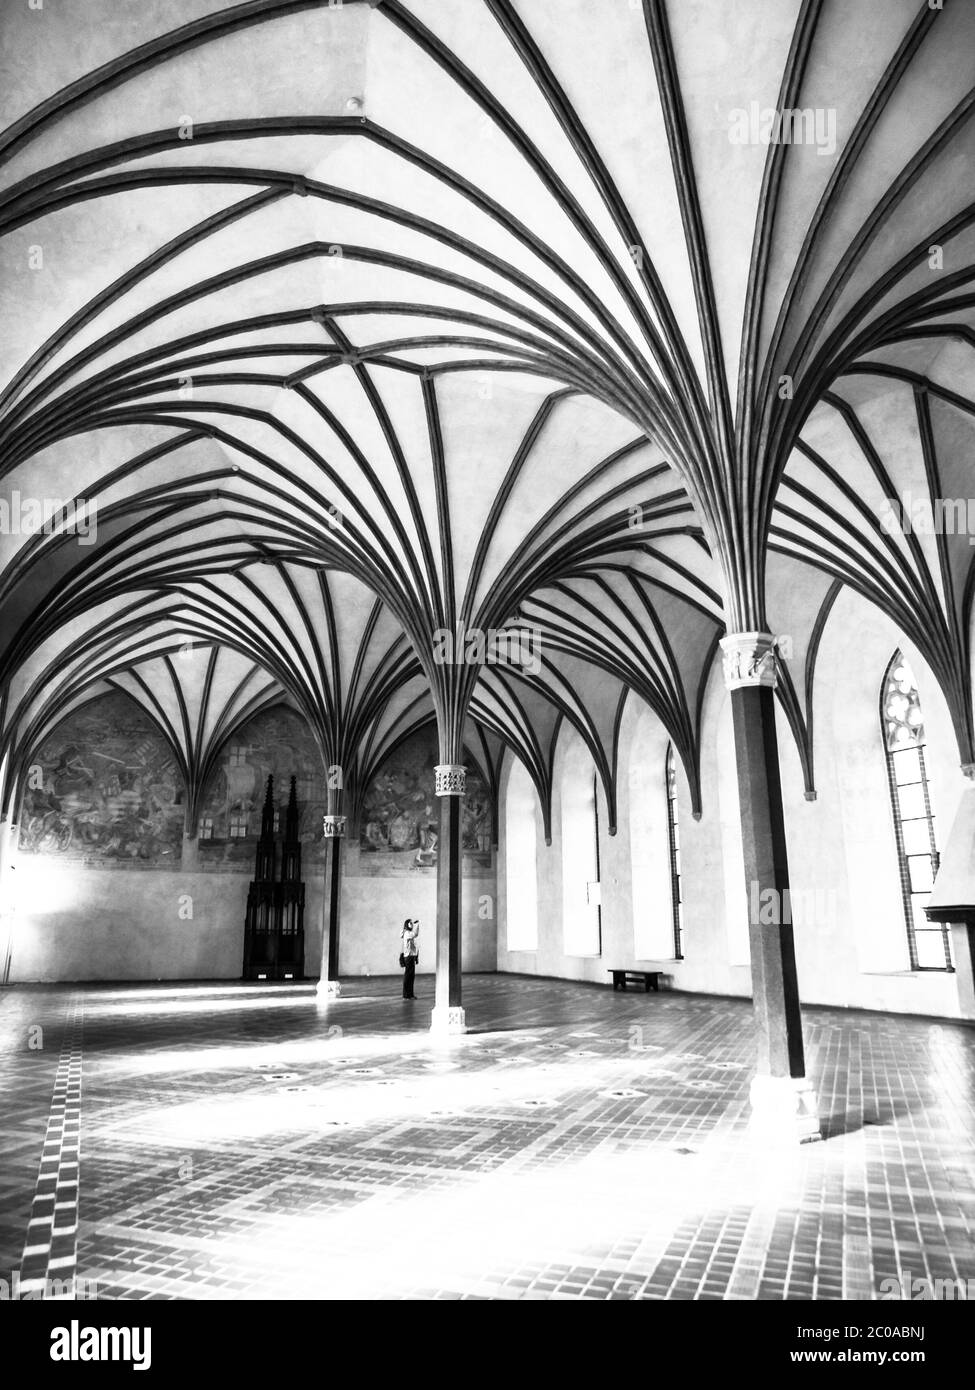 Le Grand réfectoire, la plus grande salle du château de Malbork avec un magnifique plafond de voûte gothique, Pologne. Image en noir et blanc. Banque D'Images